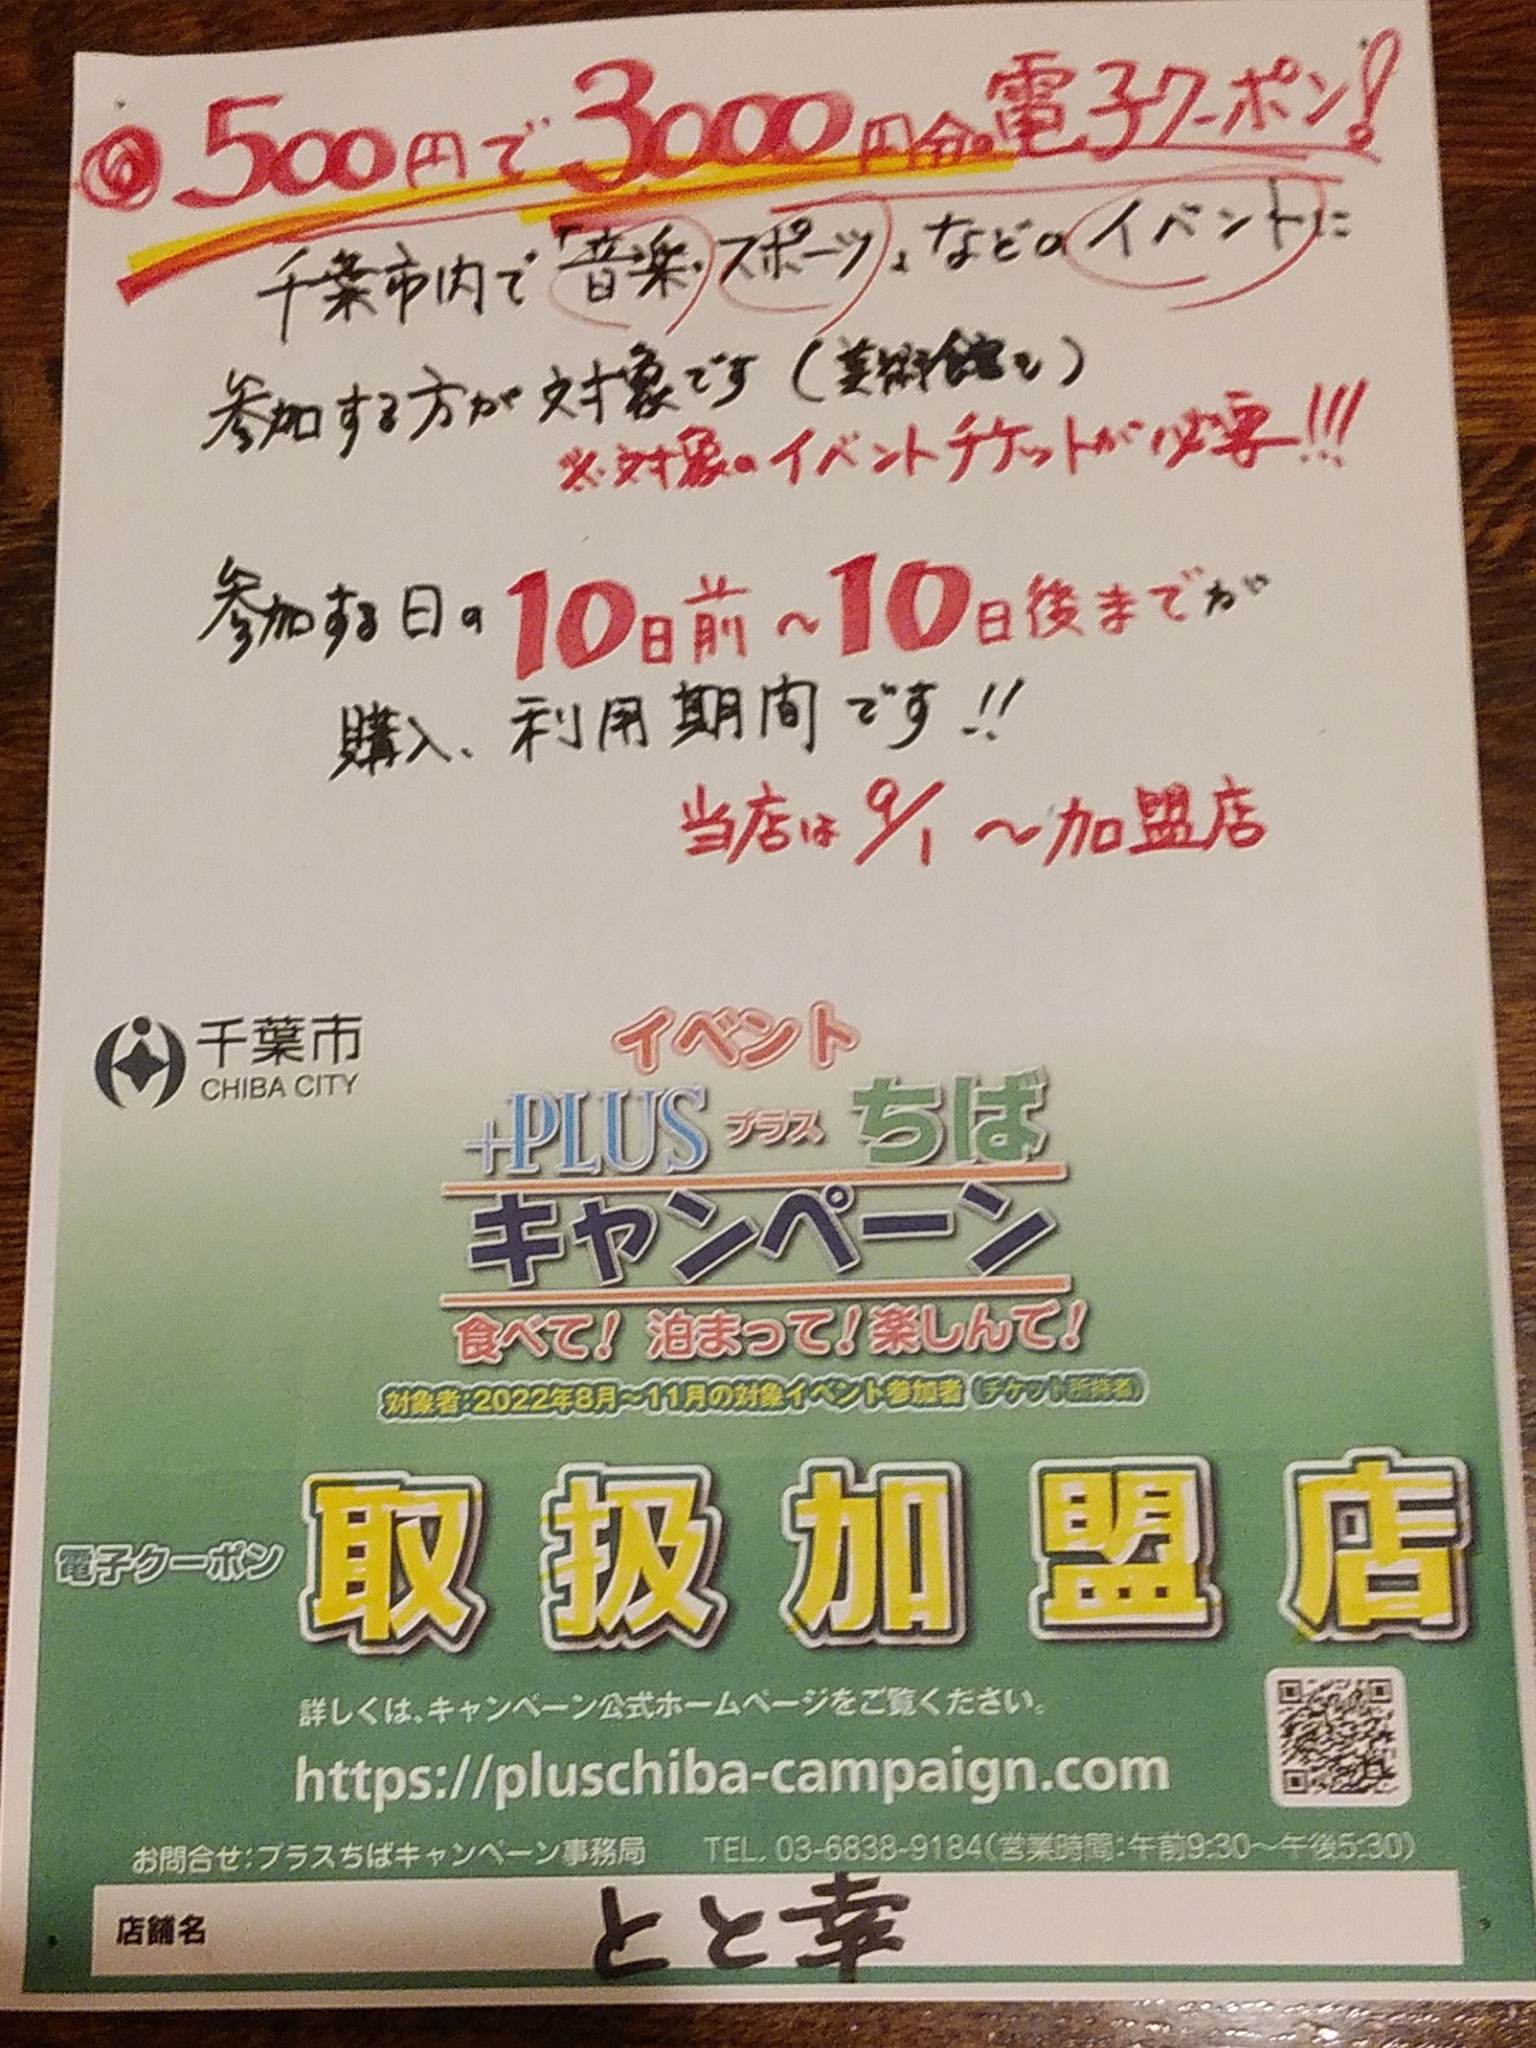 千葉県新型コロナ感染防止対策のモデル認証店